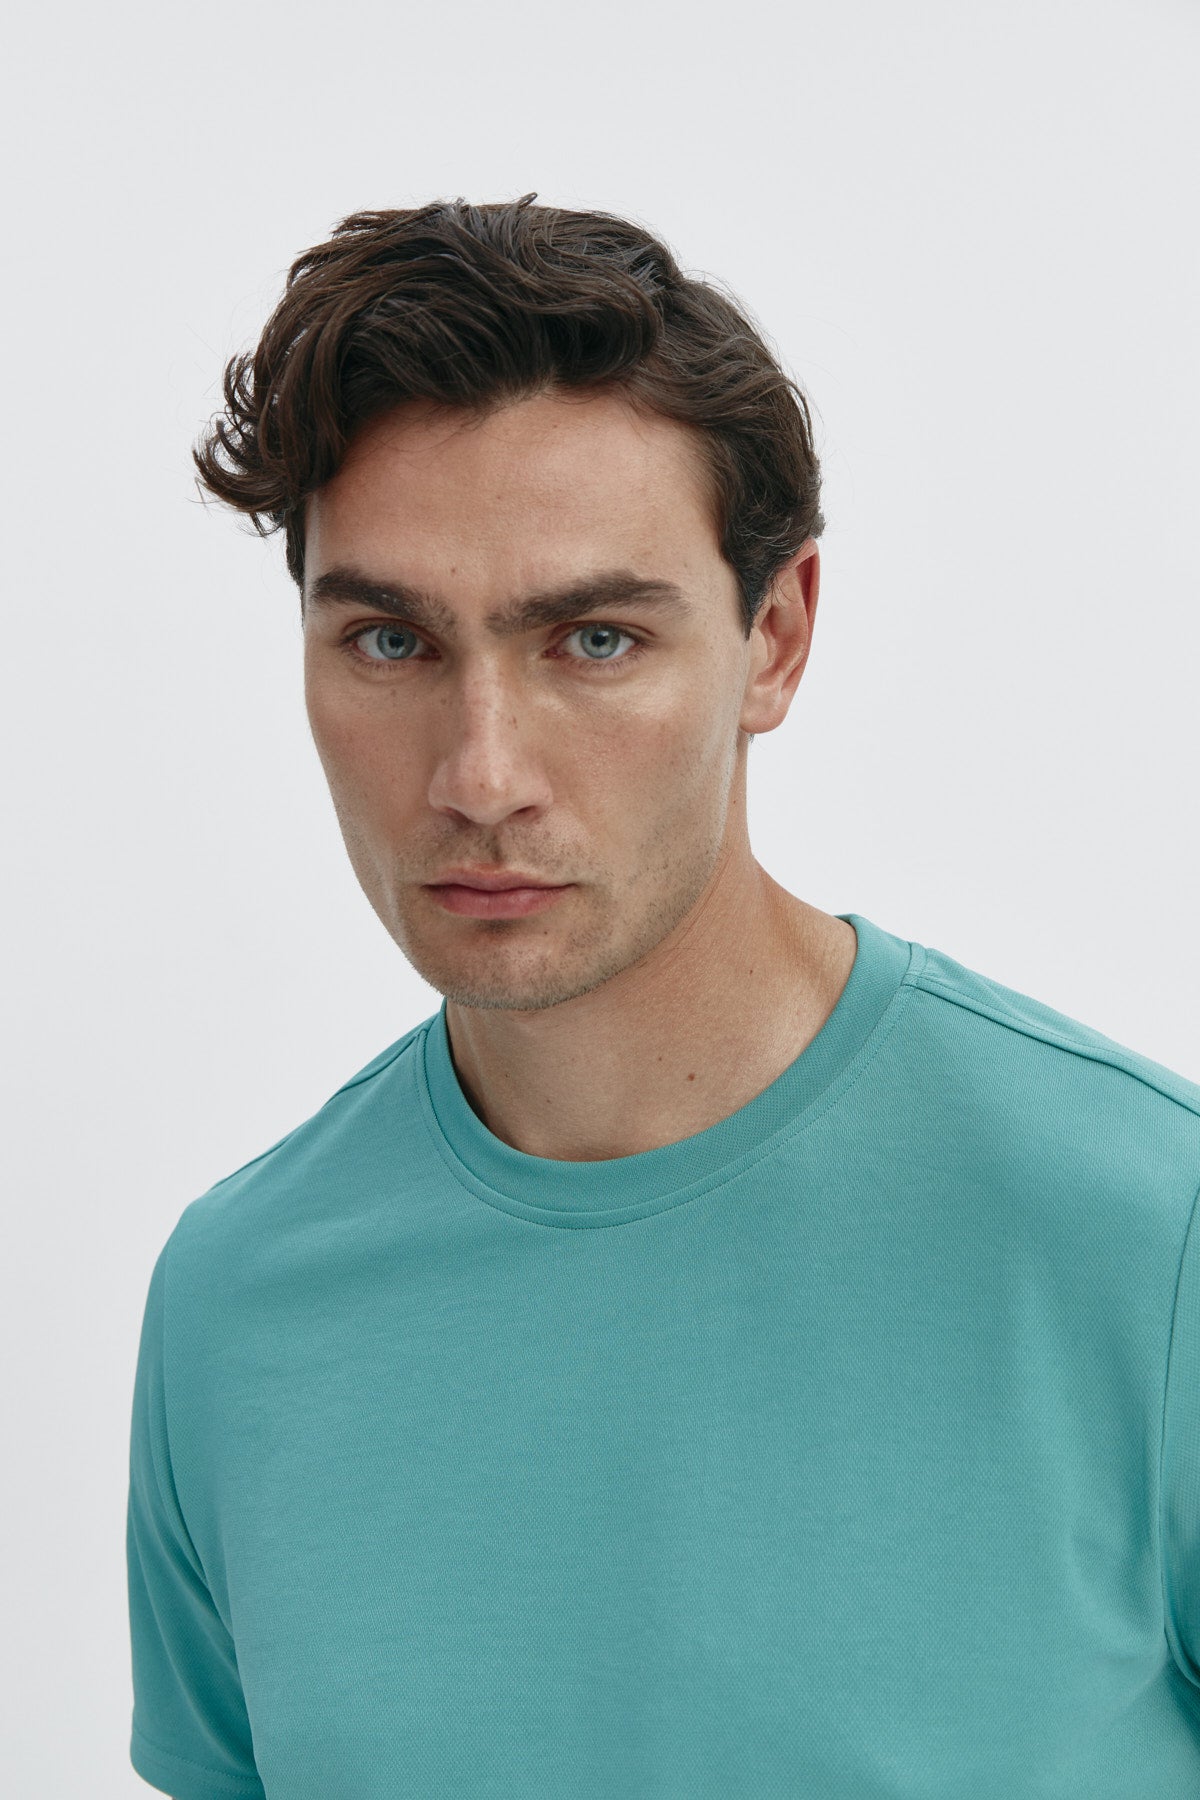 Camiseta de hombre verde clorofila de Sepiia, estilo y versatilidad en una prenda resistente. Foto retrato